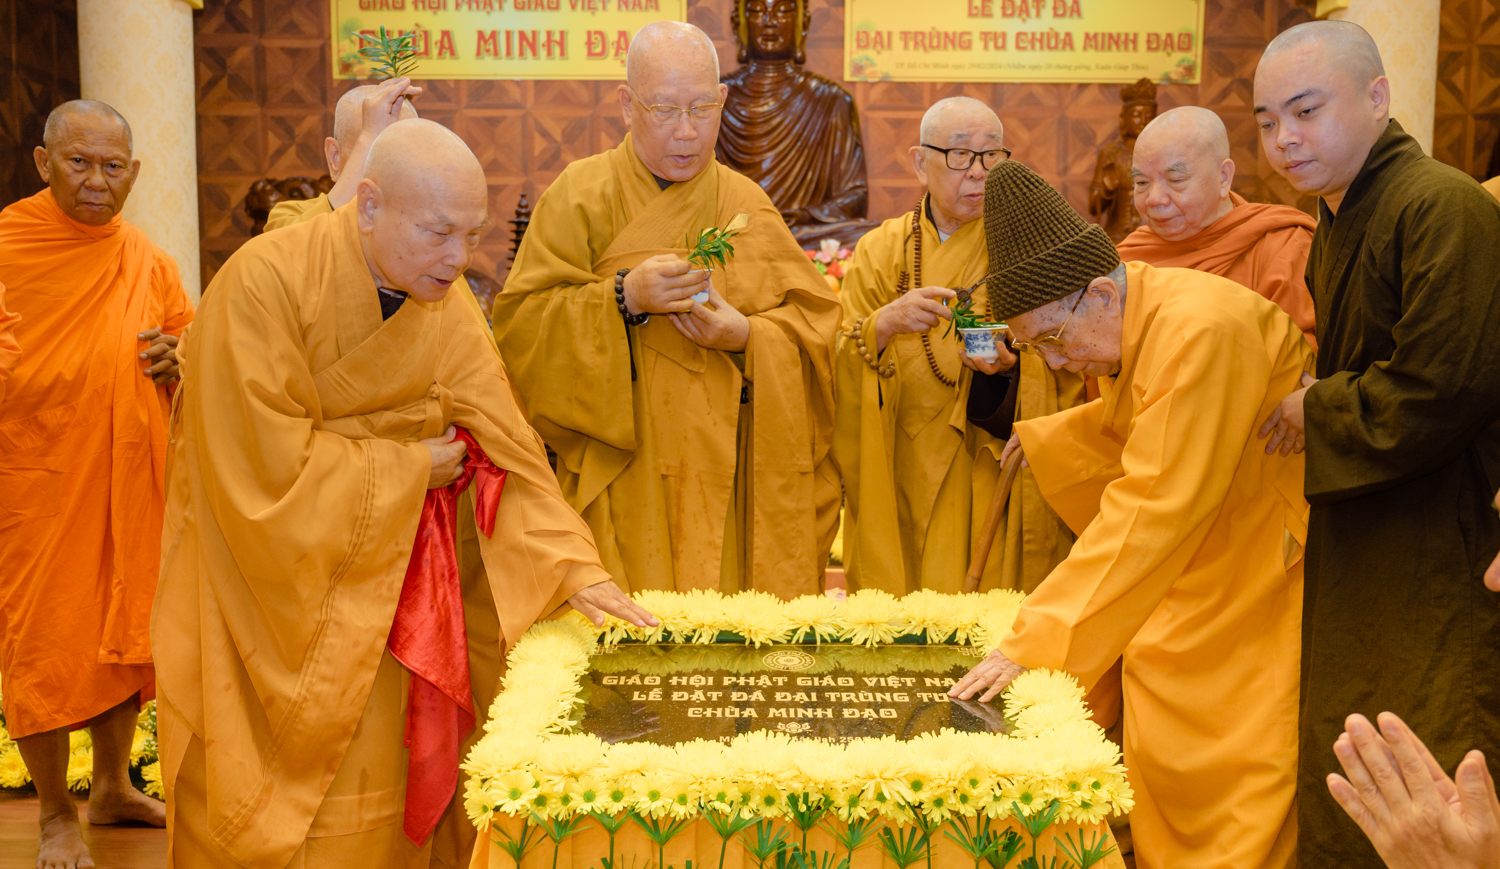 Đặt đá đại trùng tu chùa Minh Đạo trú xứ Trưởng lão Hòa thượng Chủ tịch GHPGVN